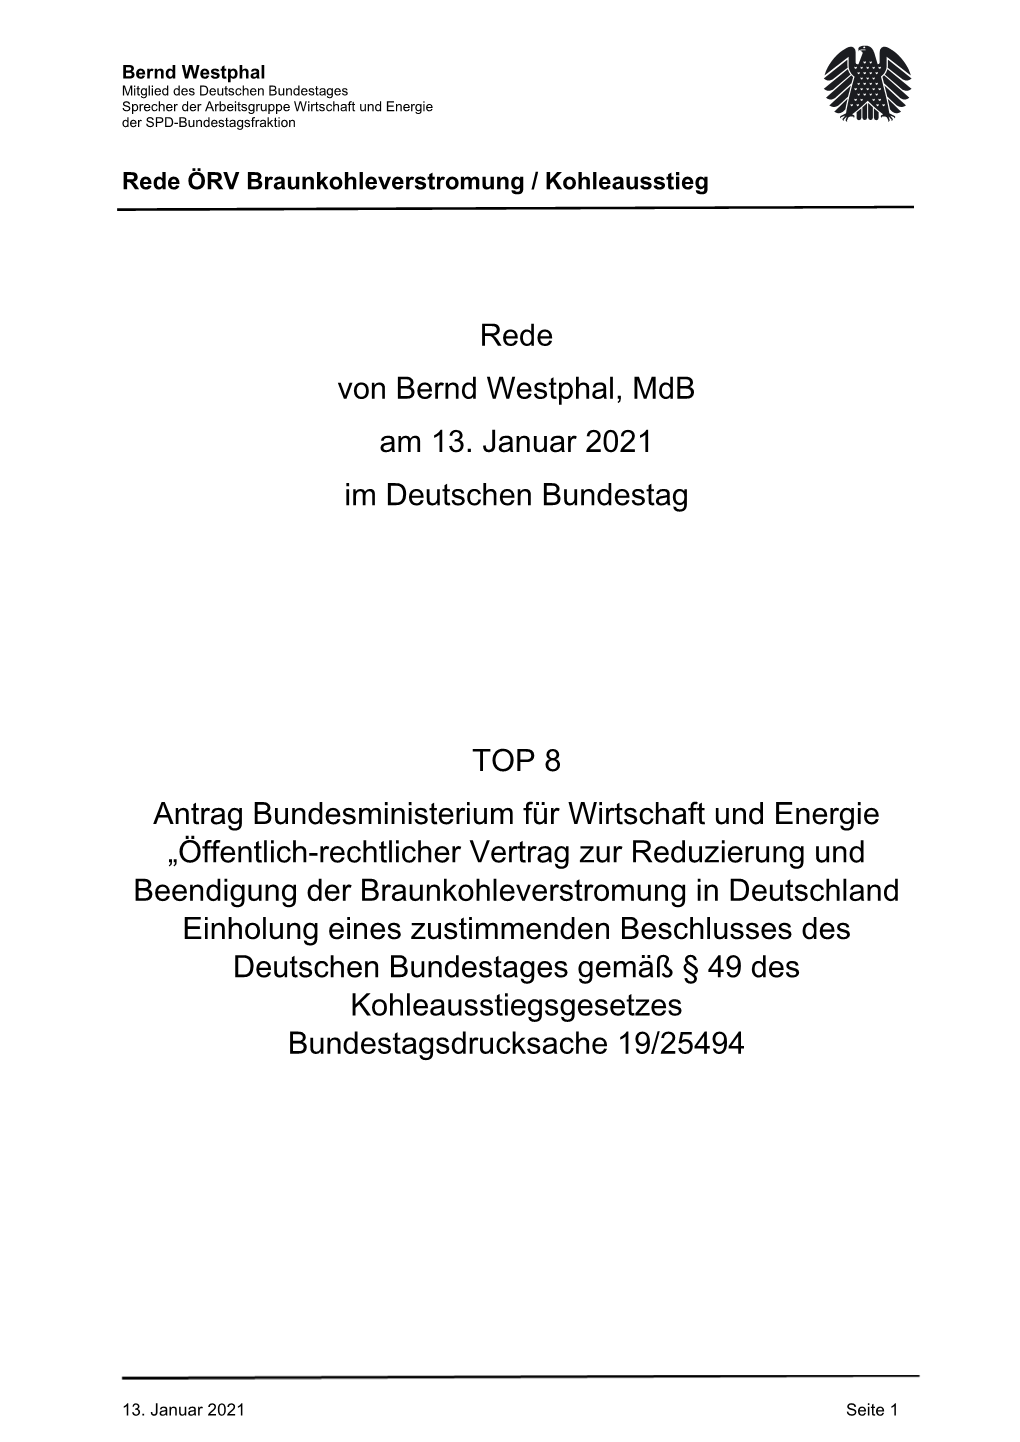 Rede Von Bernd Westphal, Mdb Am 13. Januar 2021 Im Deutschen Bundestag